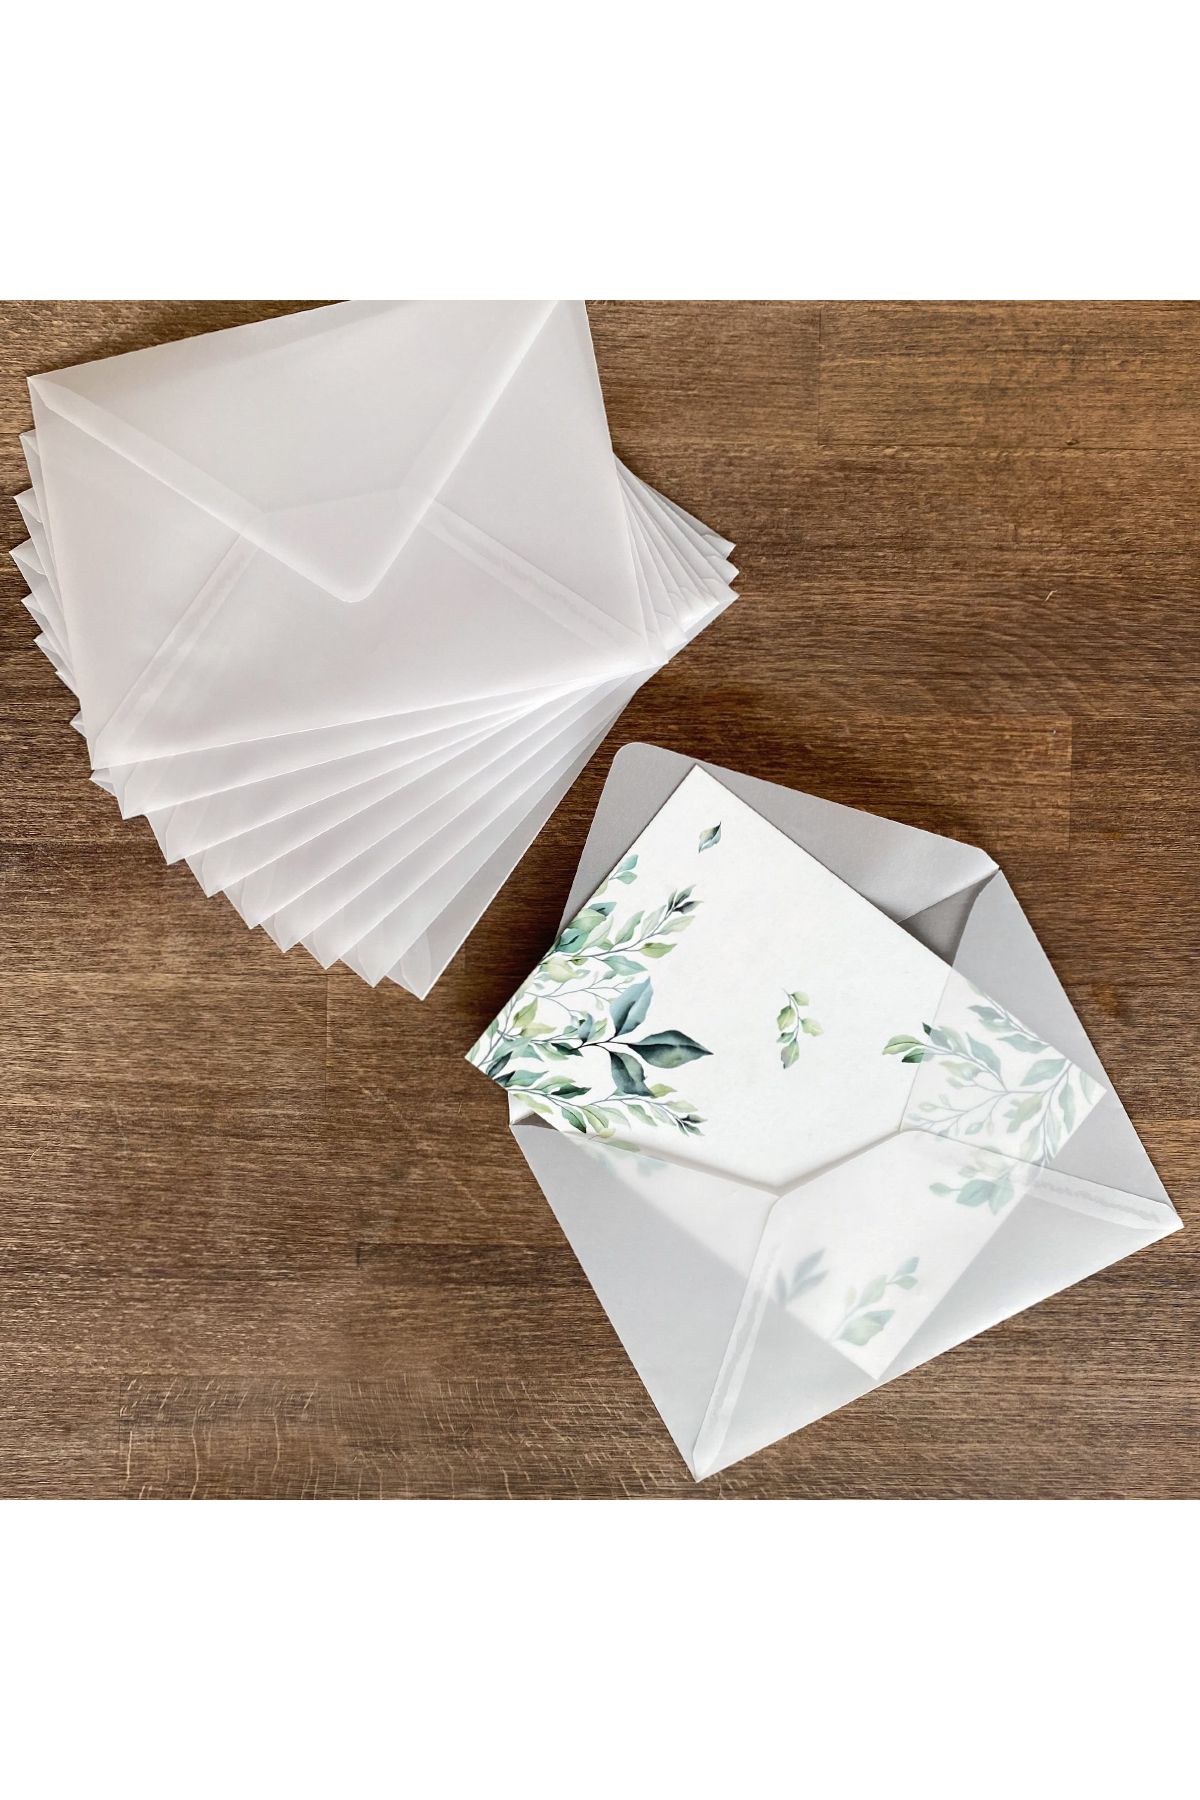 Bimotif Beyaz Transparan Zarf, 13x18 Cm 10 Adet